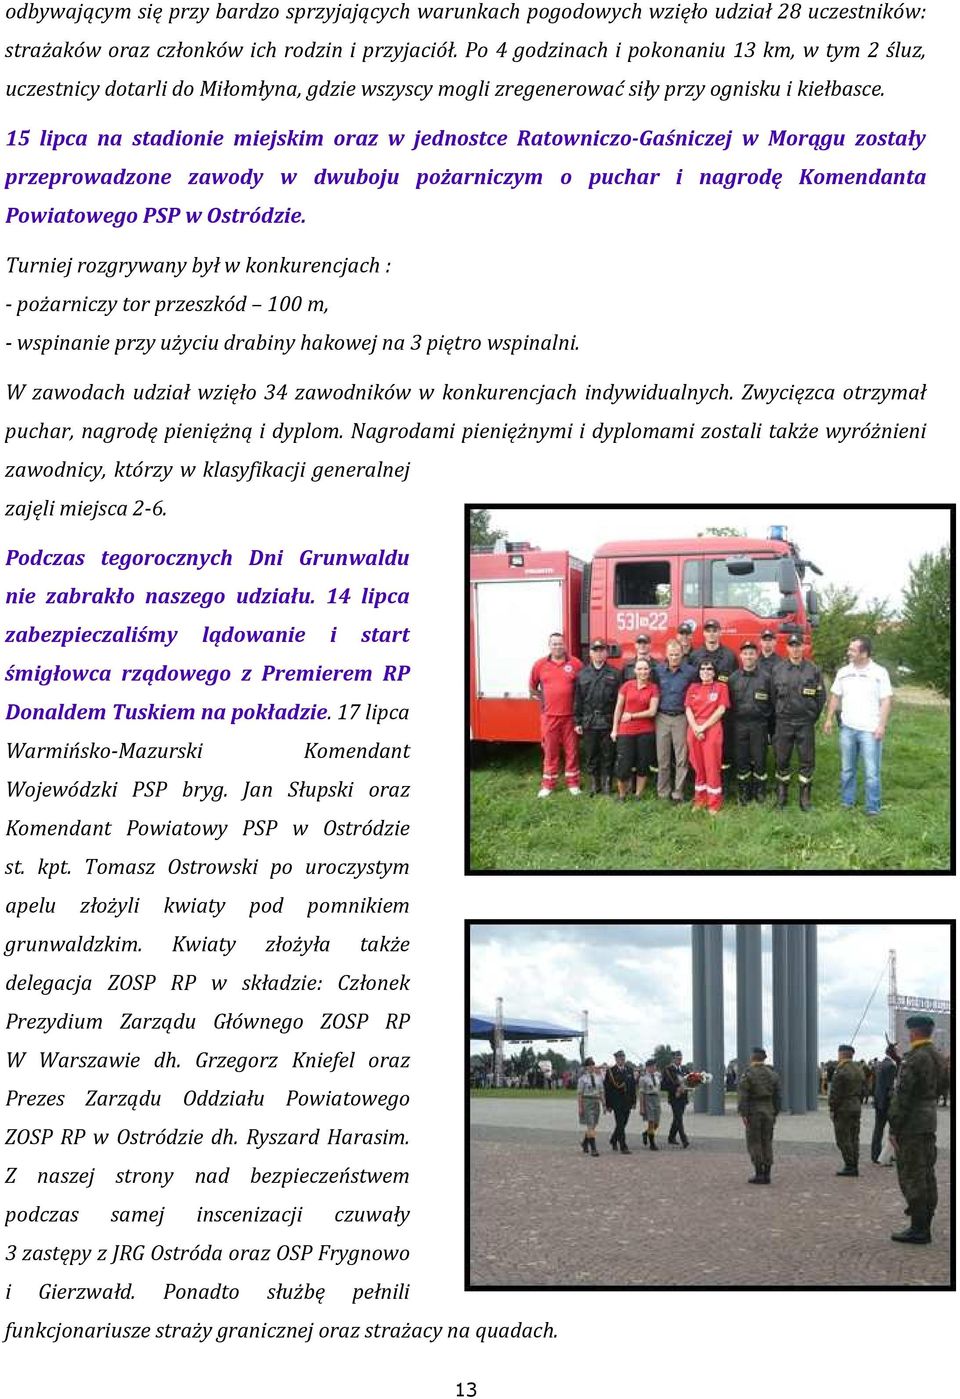 15 lipca na stadionie miejskim oraz w jednostce Ratowniczo-Gaśniczej w Morągu zostały przeprowadzone zawody w dwuboju pożarniczym o puchar i nagrodę Komendanta Powiatowego PSP w Ostródzie.